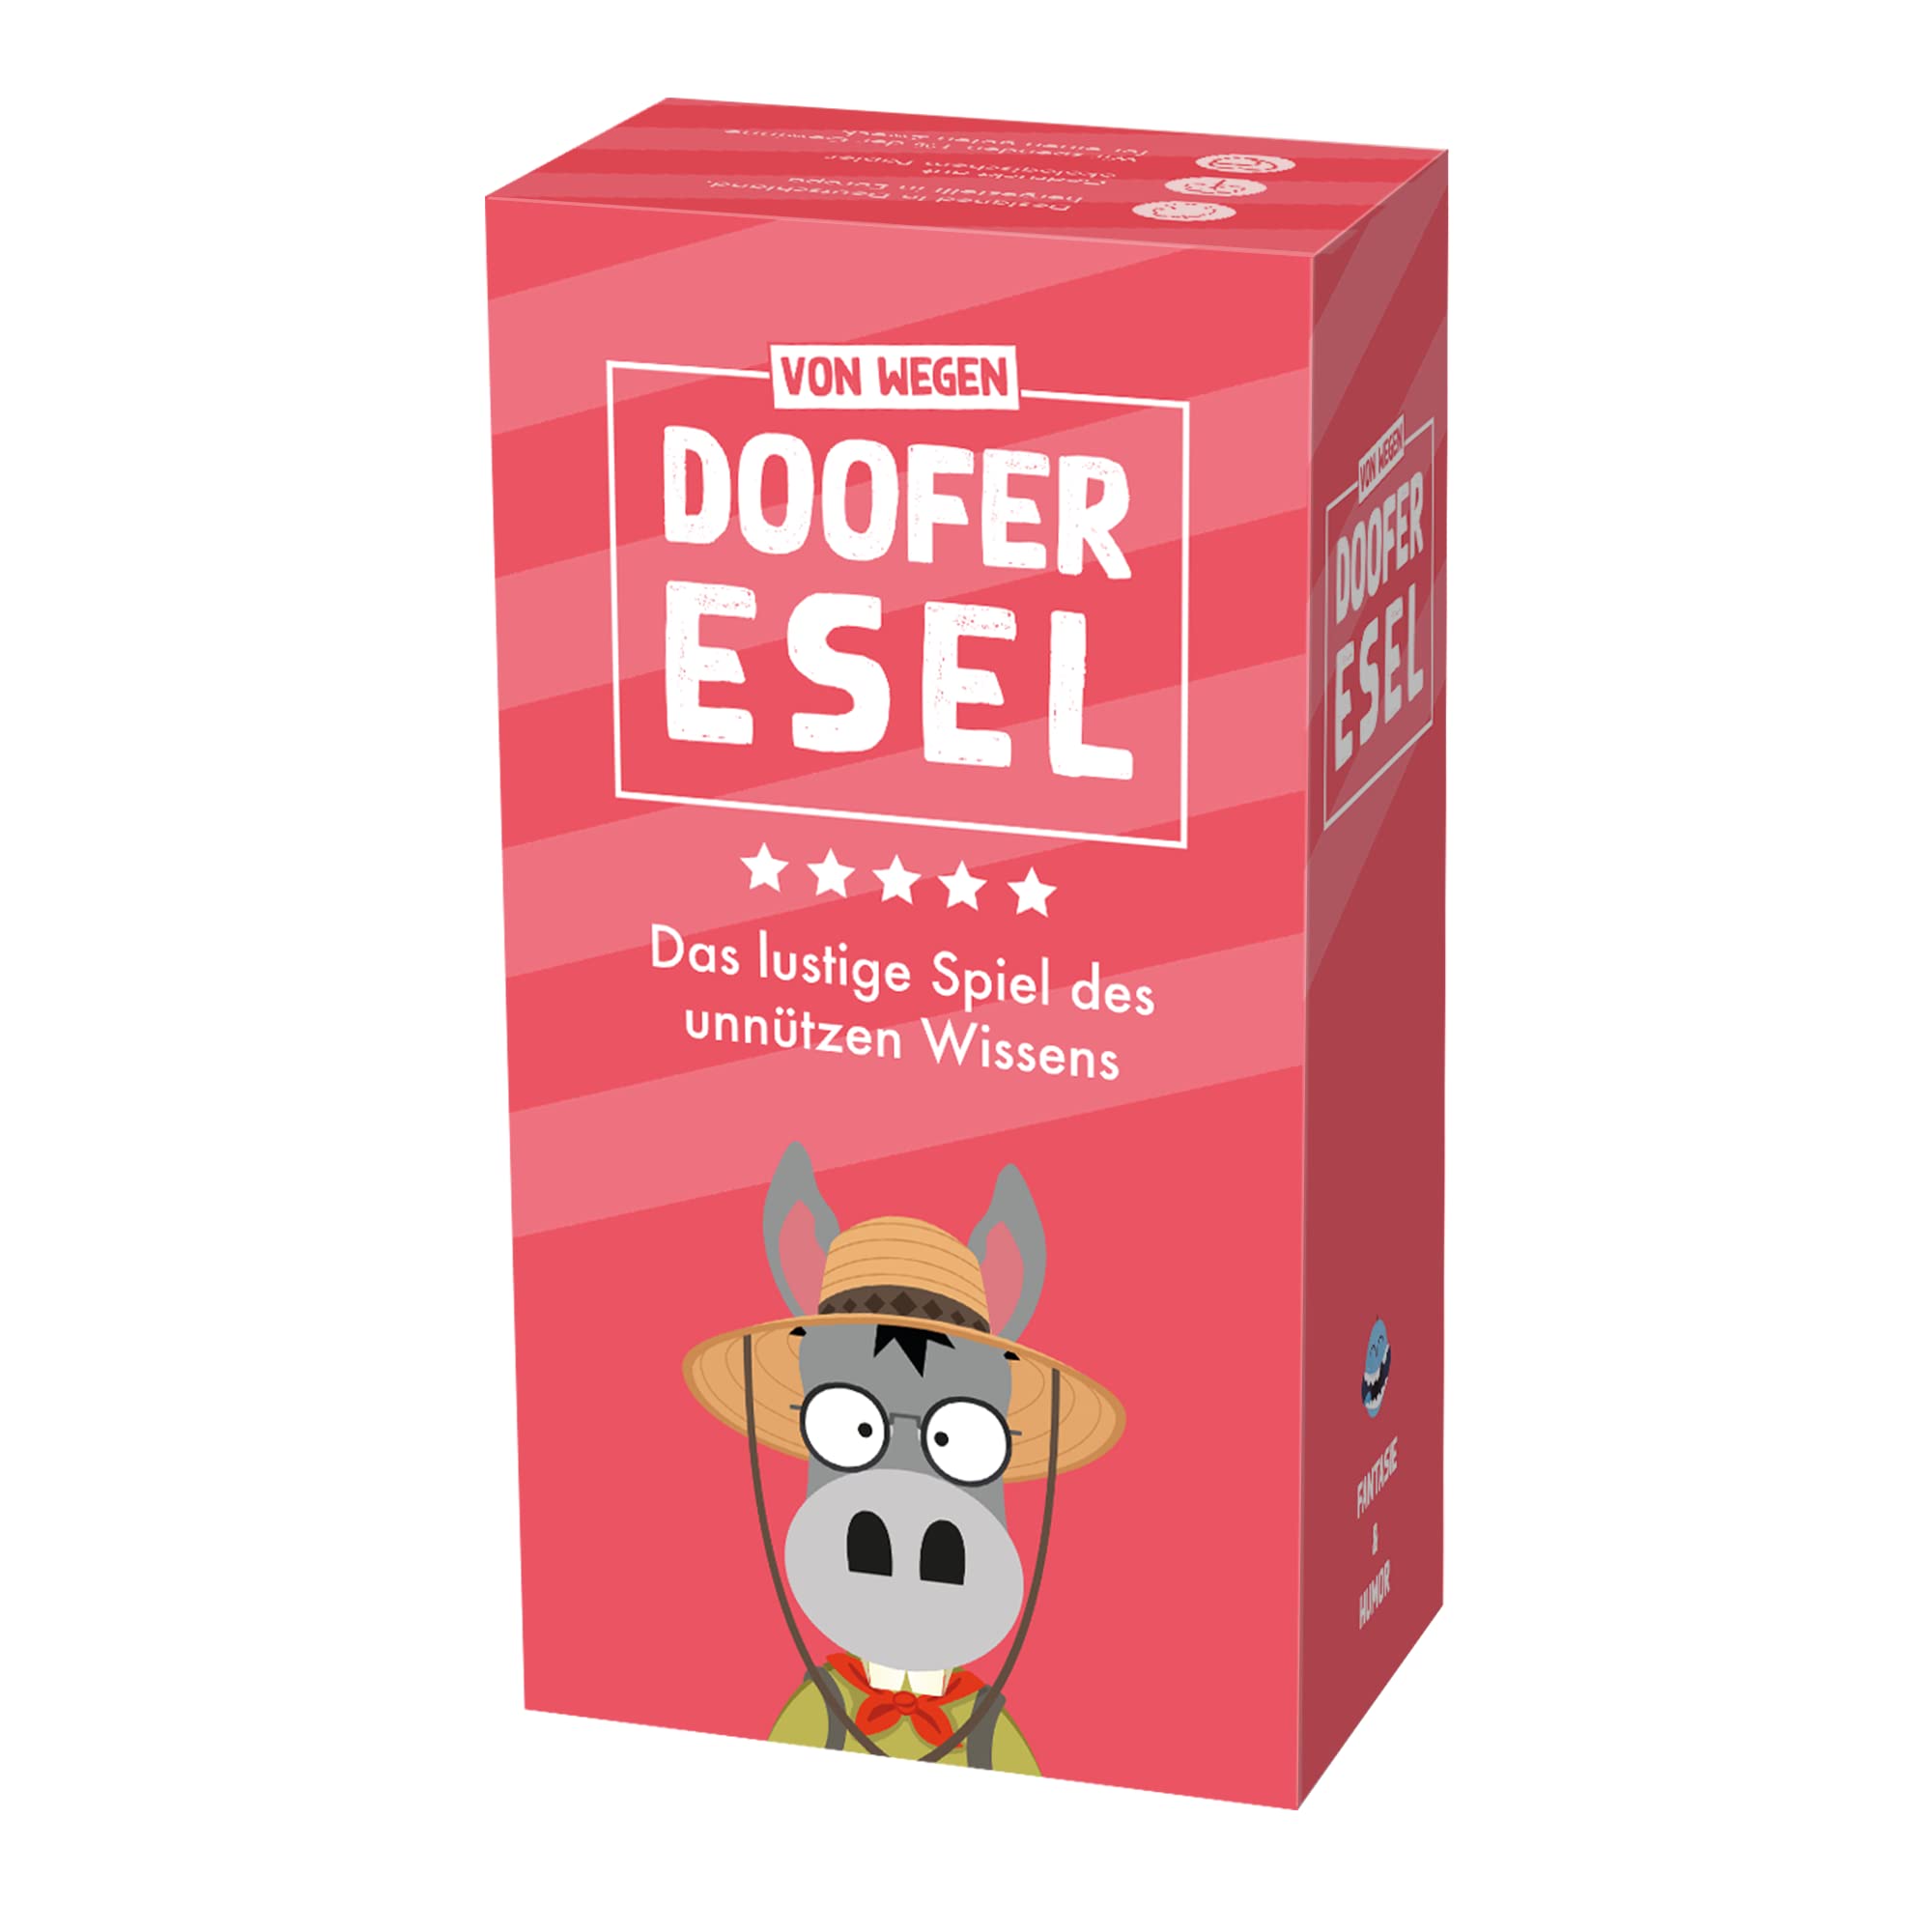 DOOFER Esel - Das lustige Spiel des unnützen Wissens - Spiel der Kreativität, des Bluffs und Humors - Kartenspiele für Erwachsene und Kinder - Gesellschaftsspiel ab 14 Jahre